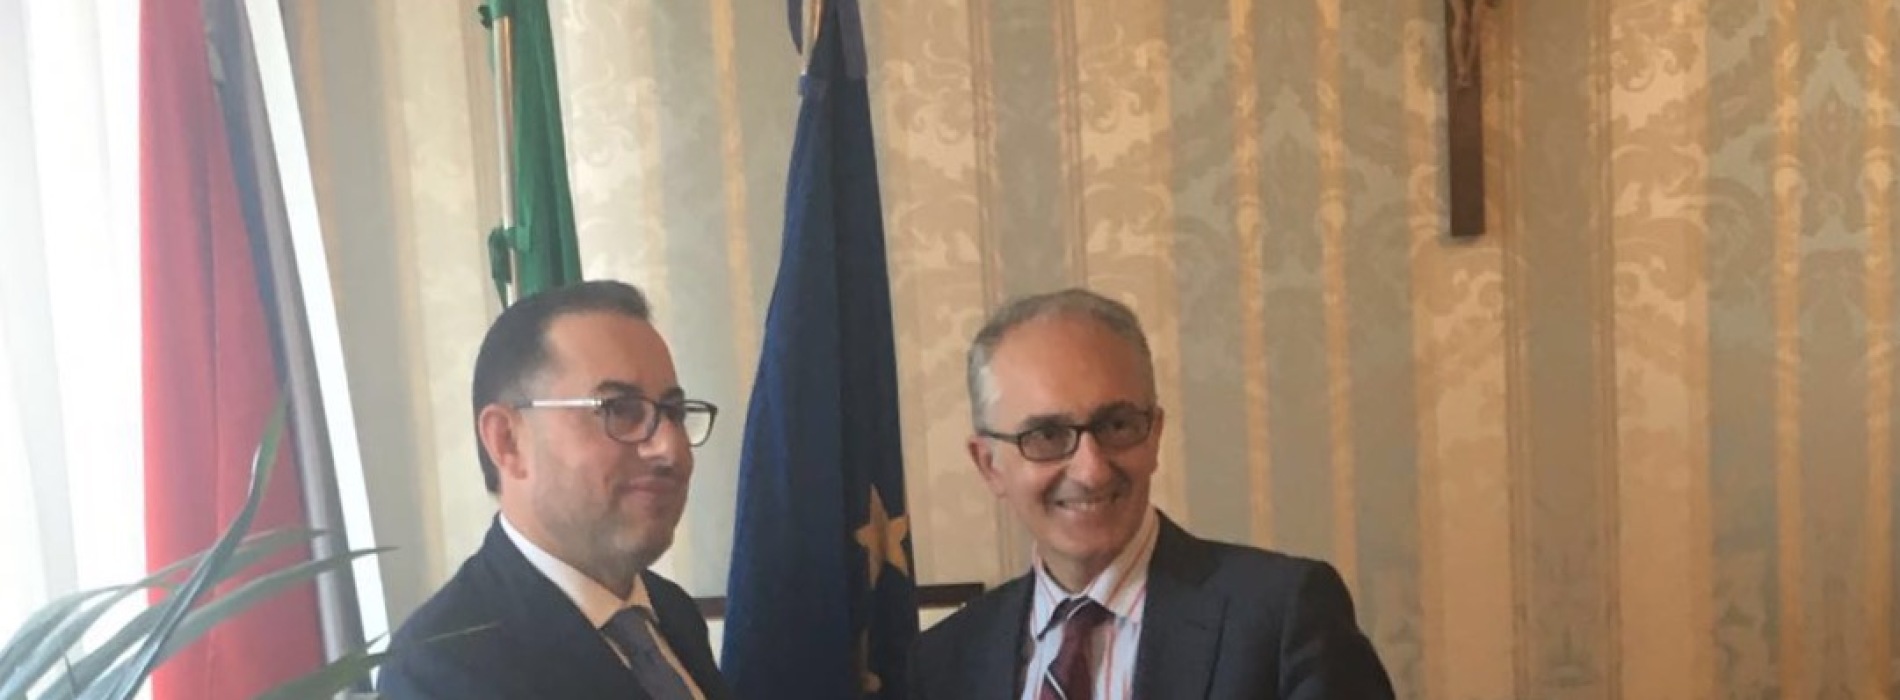 Pittella incontra Marino. L’Europa è vicina